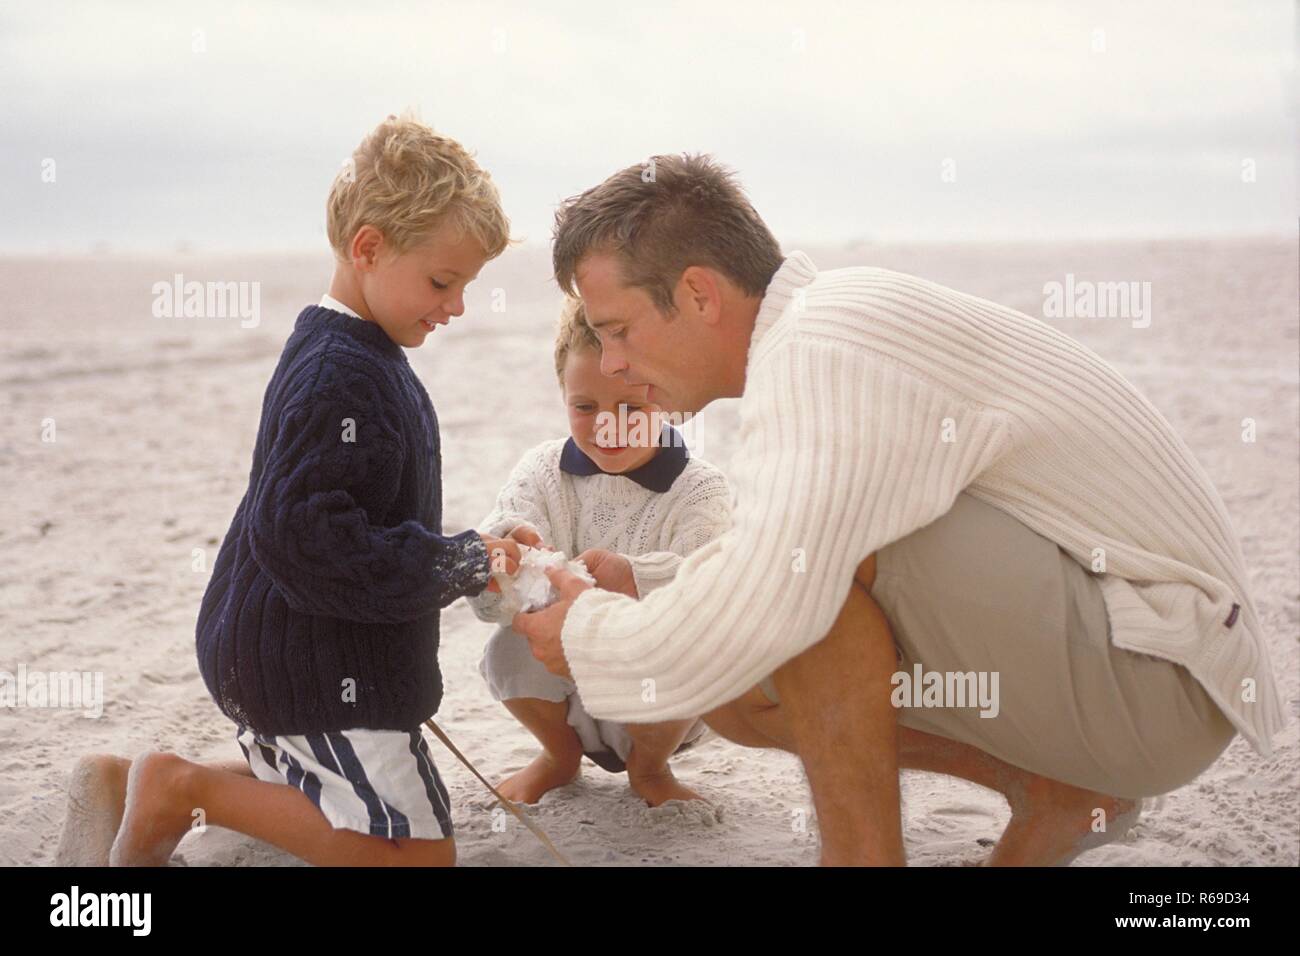 Strandszene, Mann spielt mit seinen beiden 5-7 Jahre alten blonden Soehnen barfuss am Strand Stock Photo